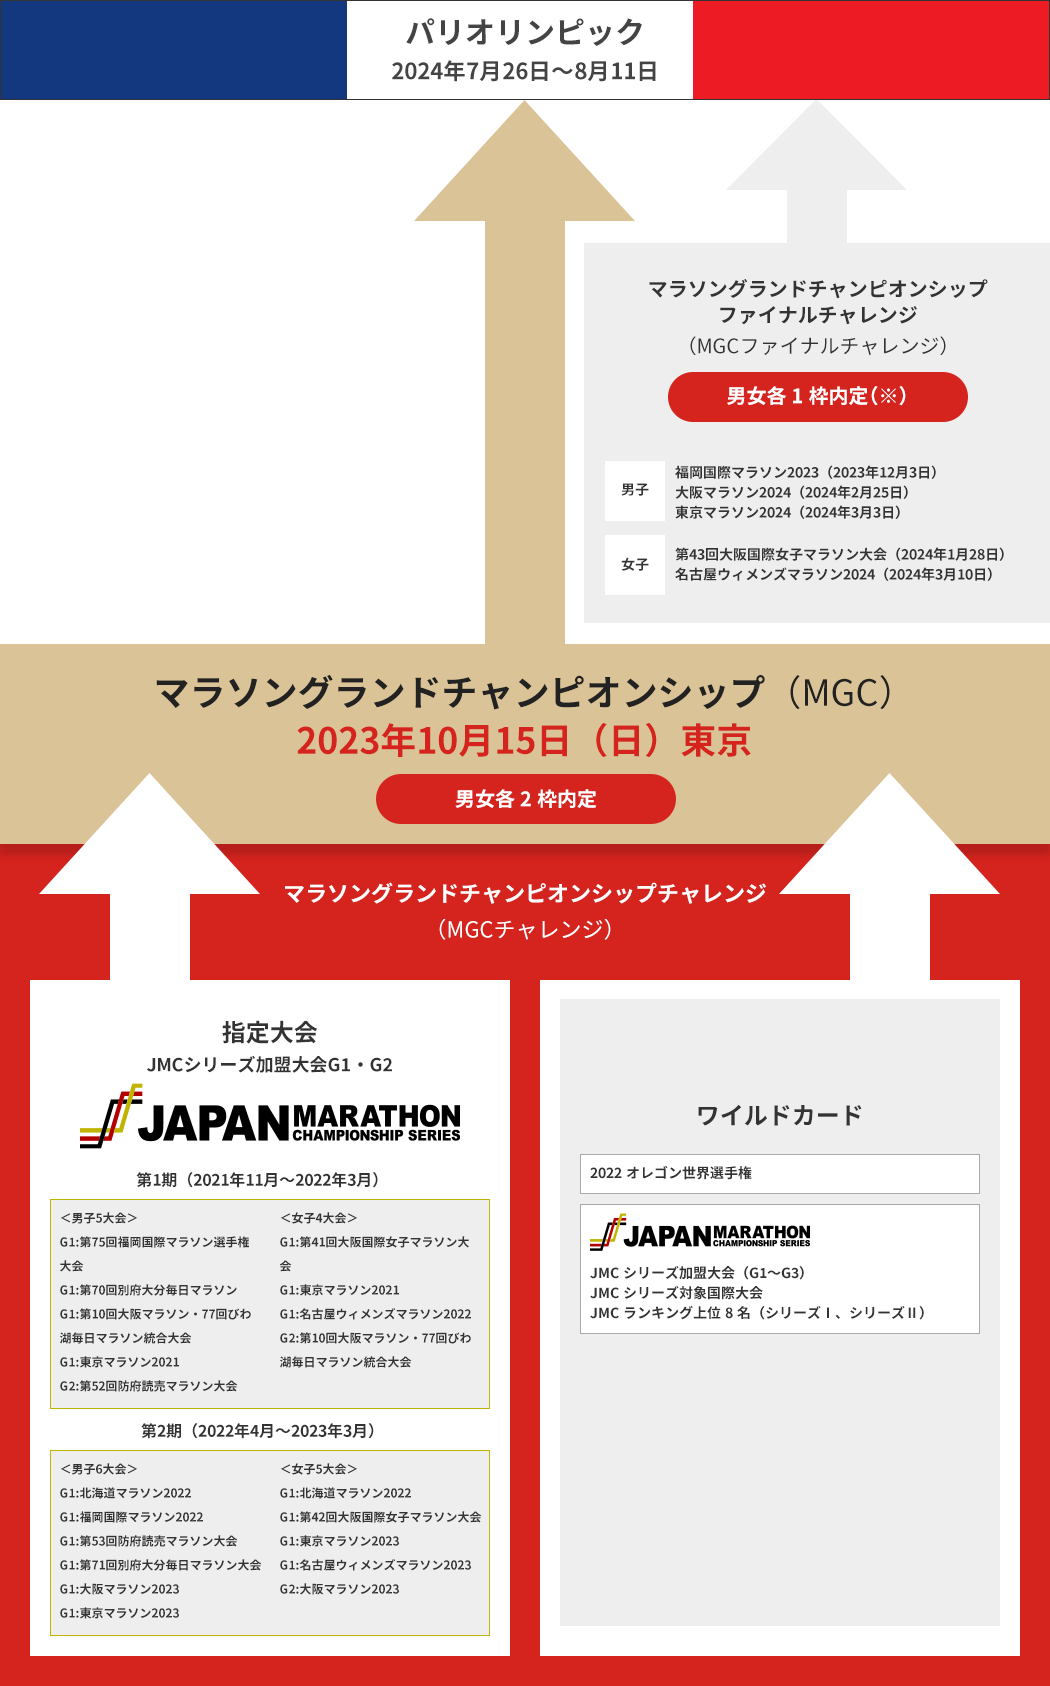 パリ2024オリンピック競技大会マラソン日本代表選考の流れ